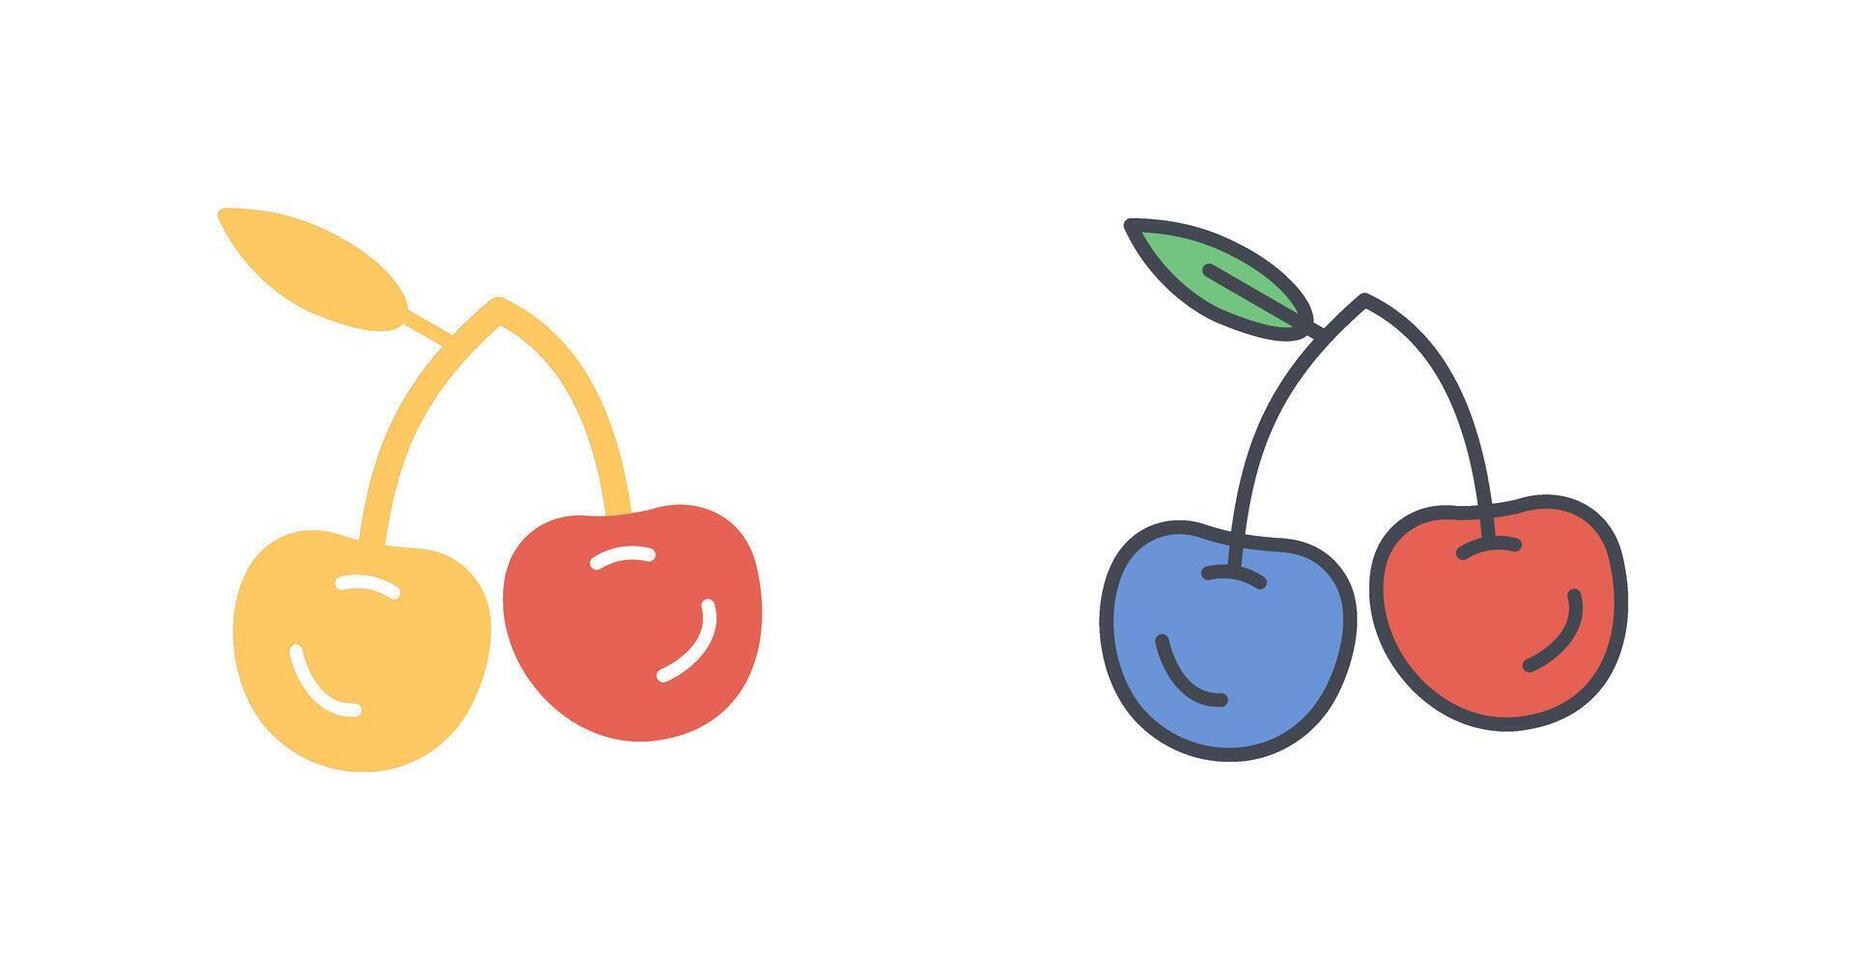 Cherries Icon Design vector